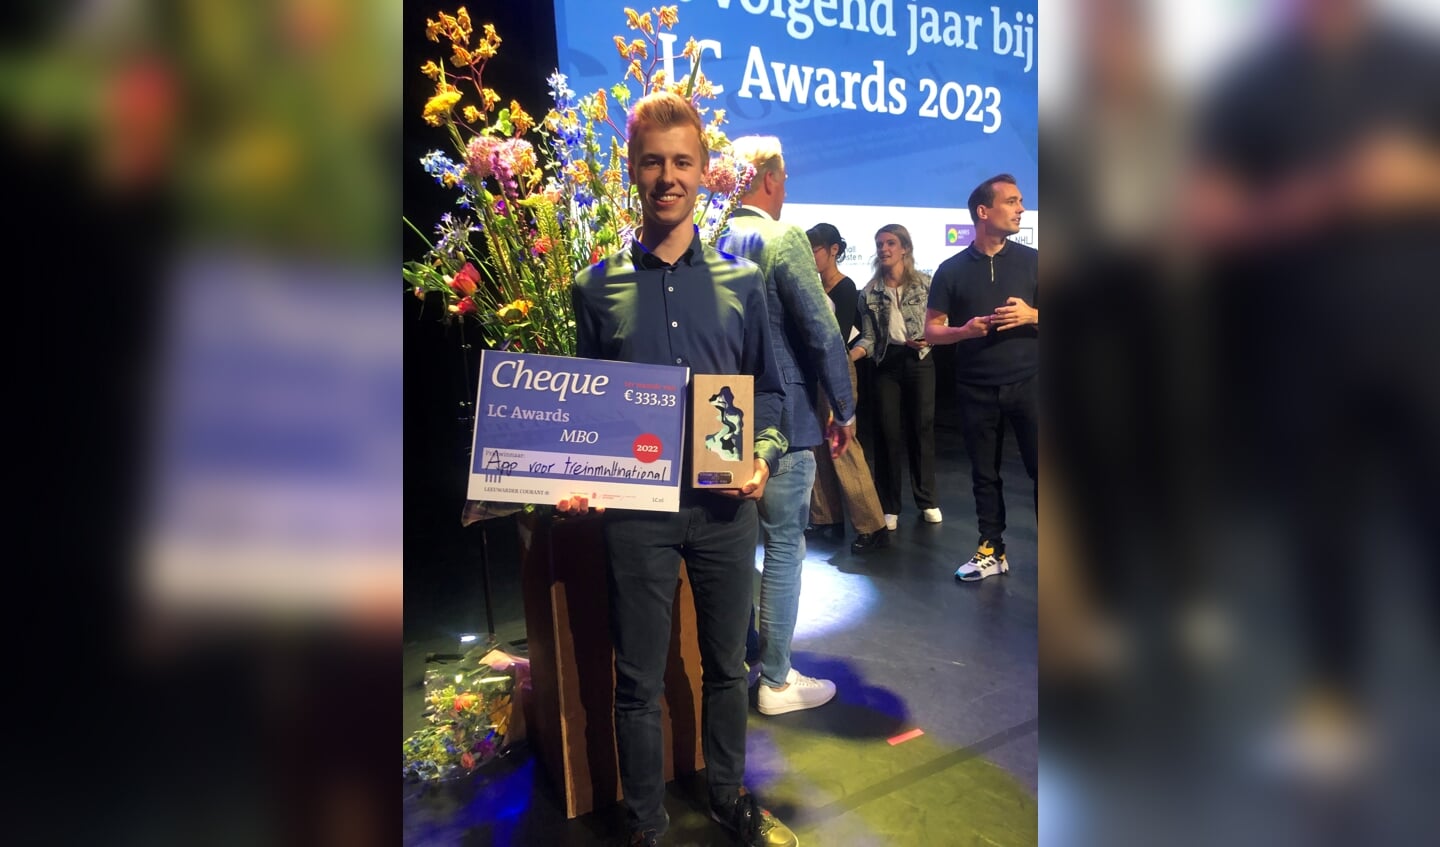 Student Ruben Talstra ROC Friese Poort uit Drachten wint de LC Awards 2022